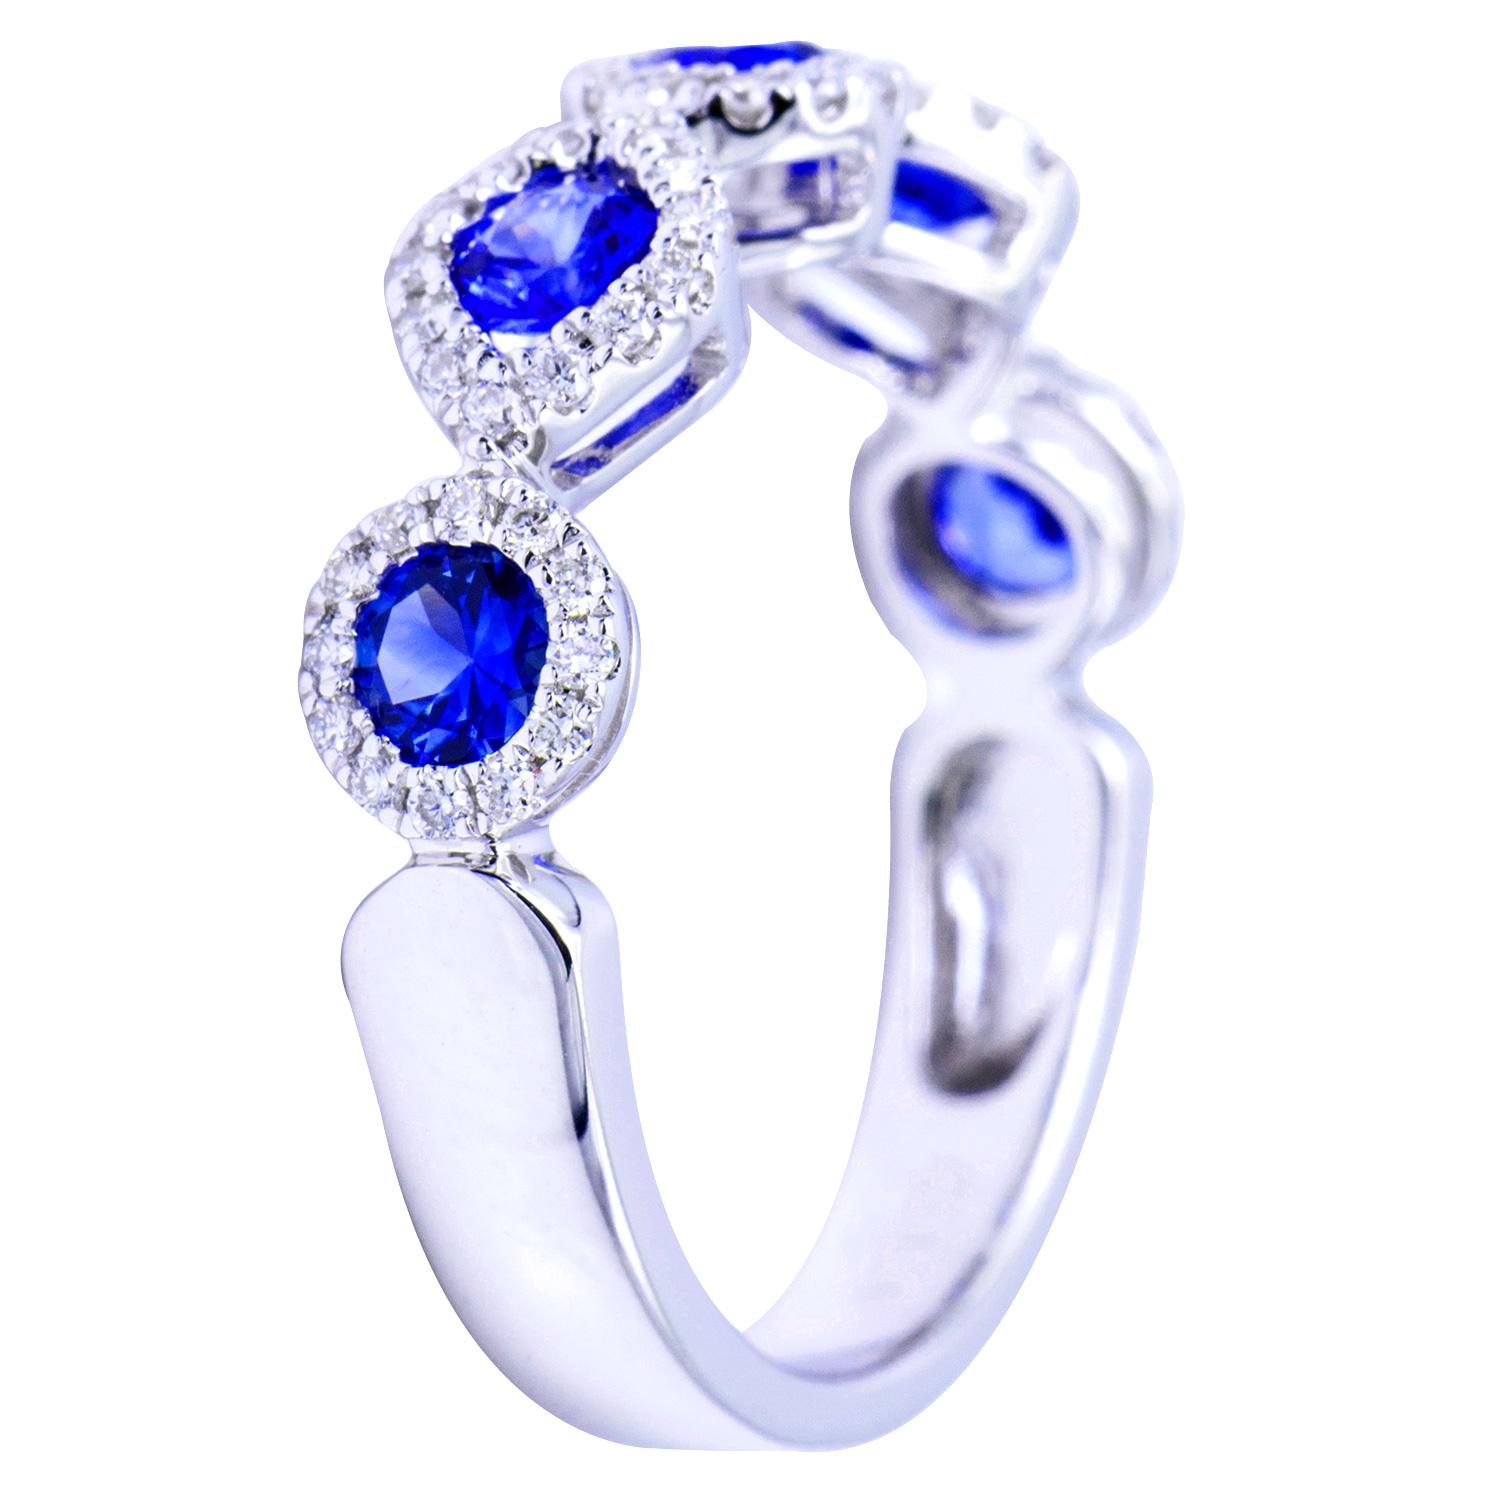 Cette magnifique bague comporte 5 magnifiques saphirs bleus totalisant 0,81 carats. Chaque saphir est entouré de diamants de couleur VS2, G. Il y a un total de 64 diamants représentant 0,25 carats. Les pierres sont serties dans 3,5 grammes d'or